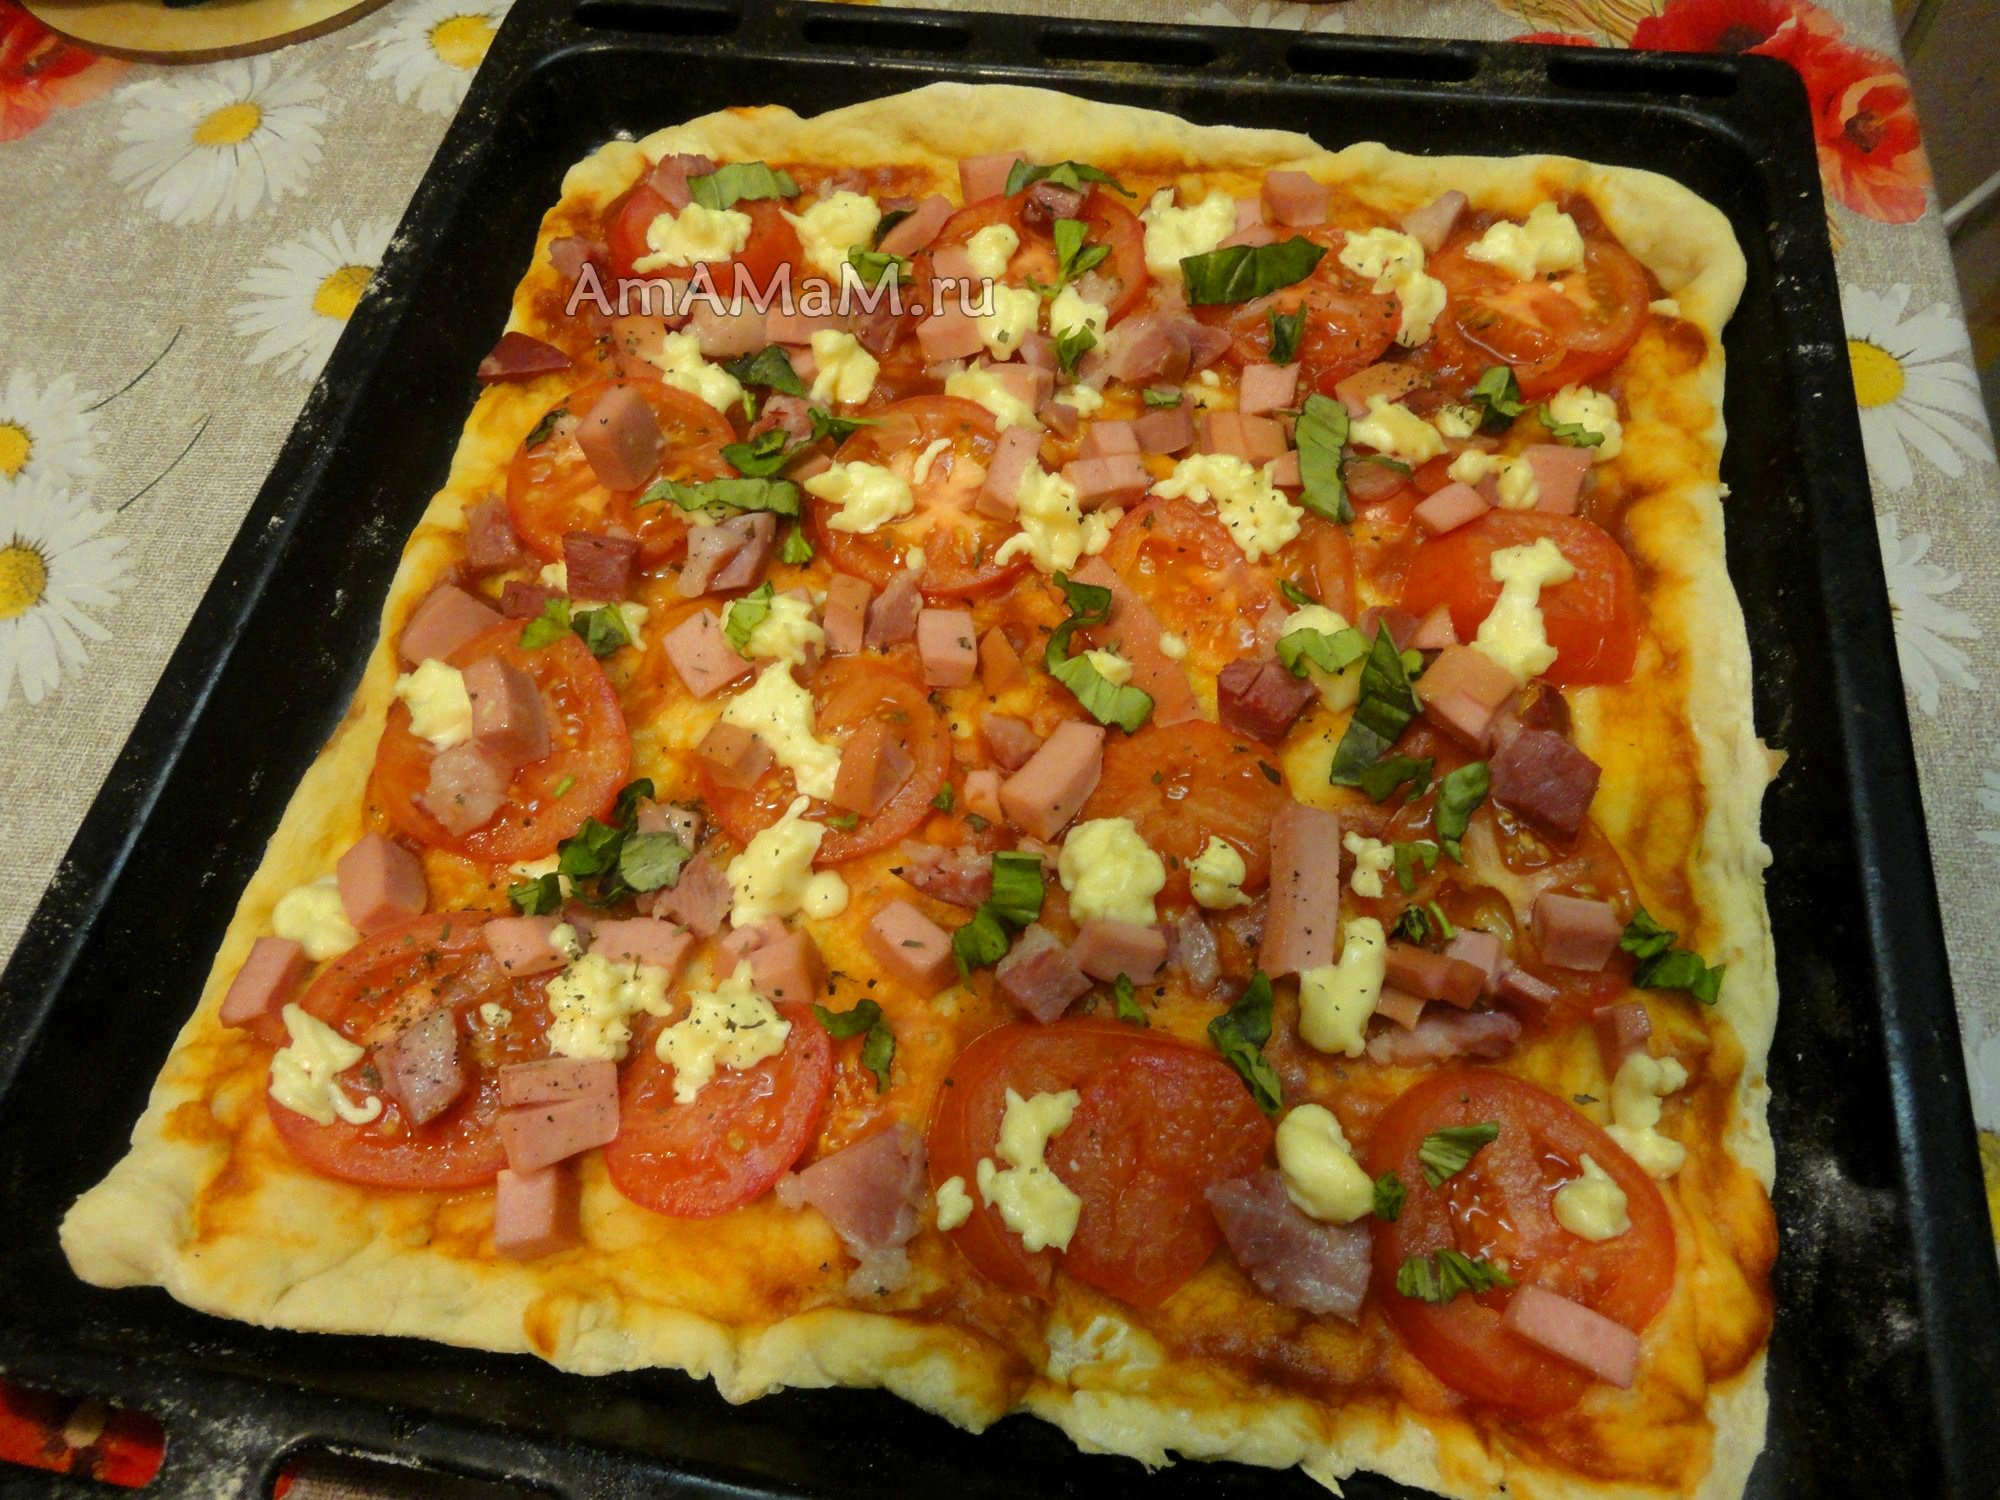 рецепт приготовления пиццы с колбасой в домашних условиях в духовке фото 103